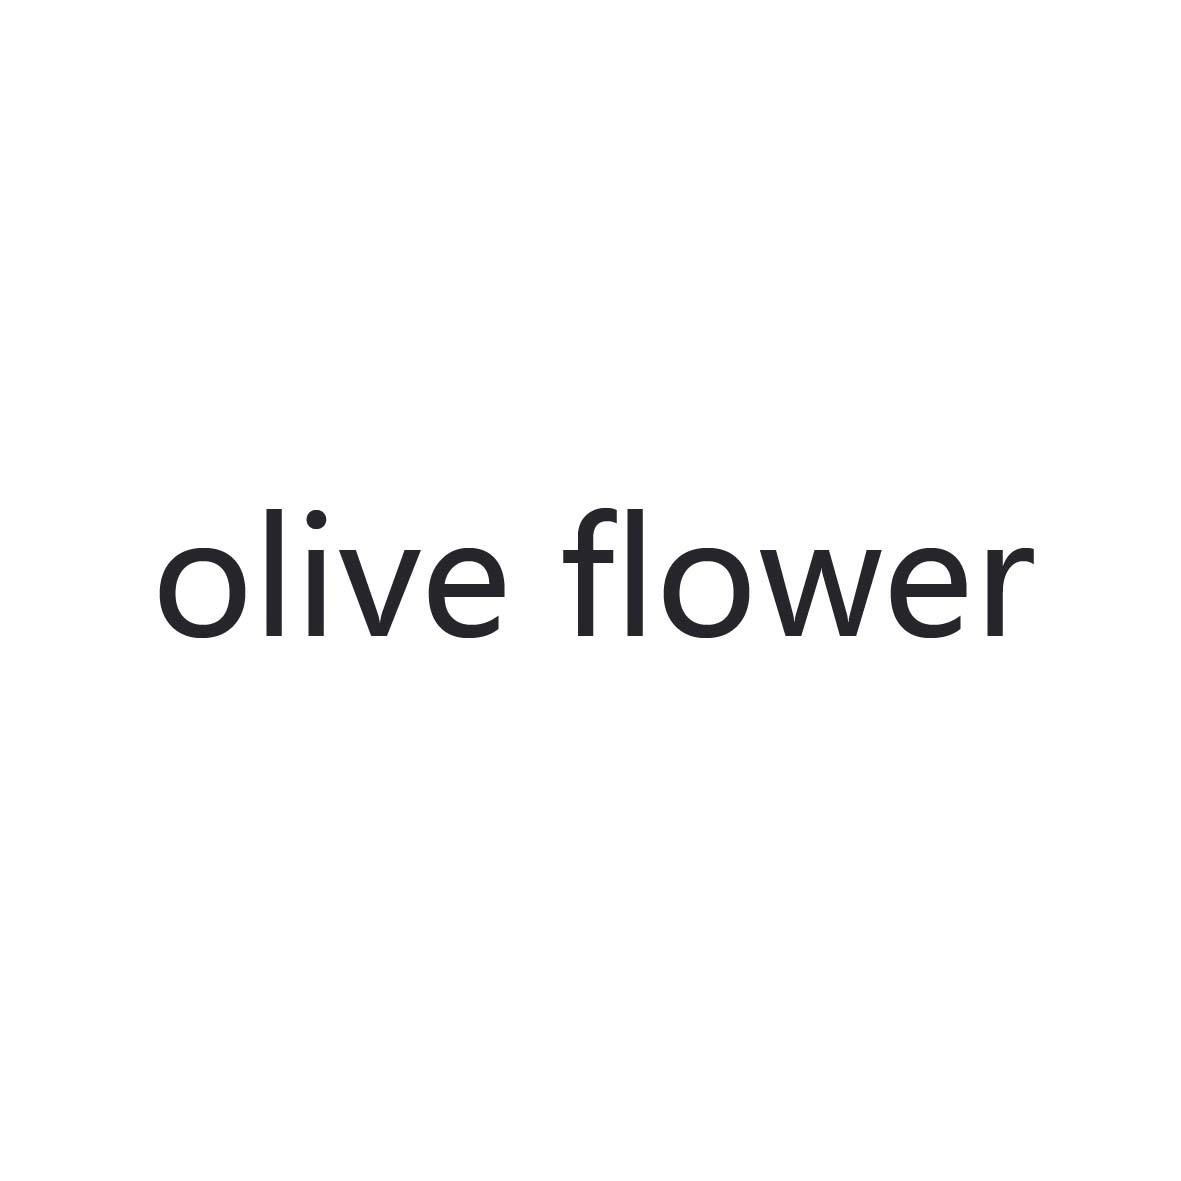 OLIVE FLOWER